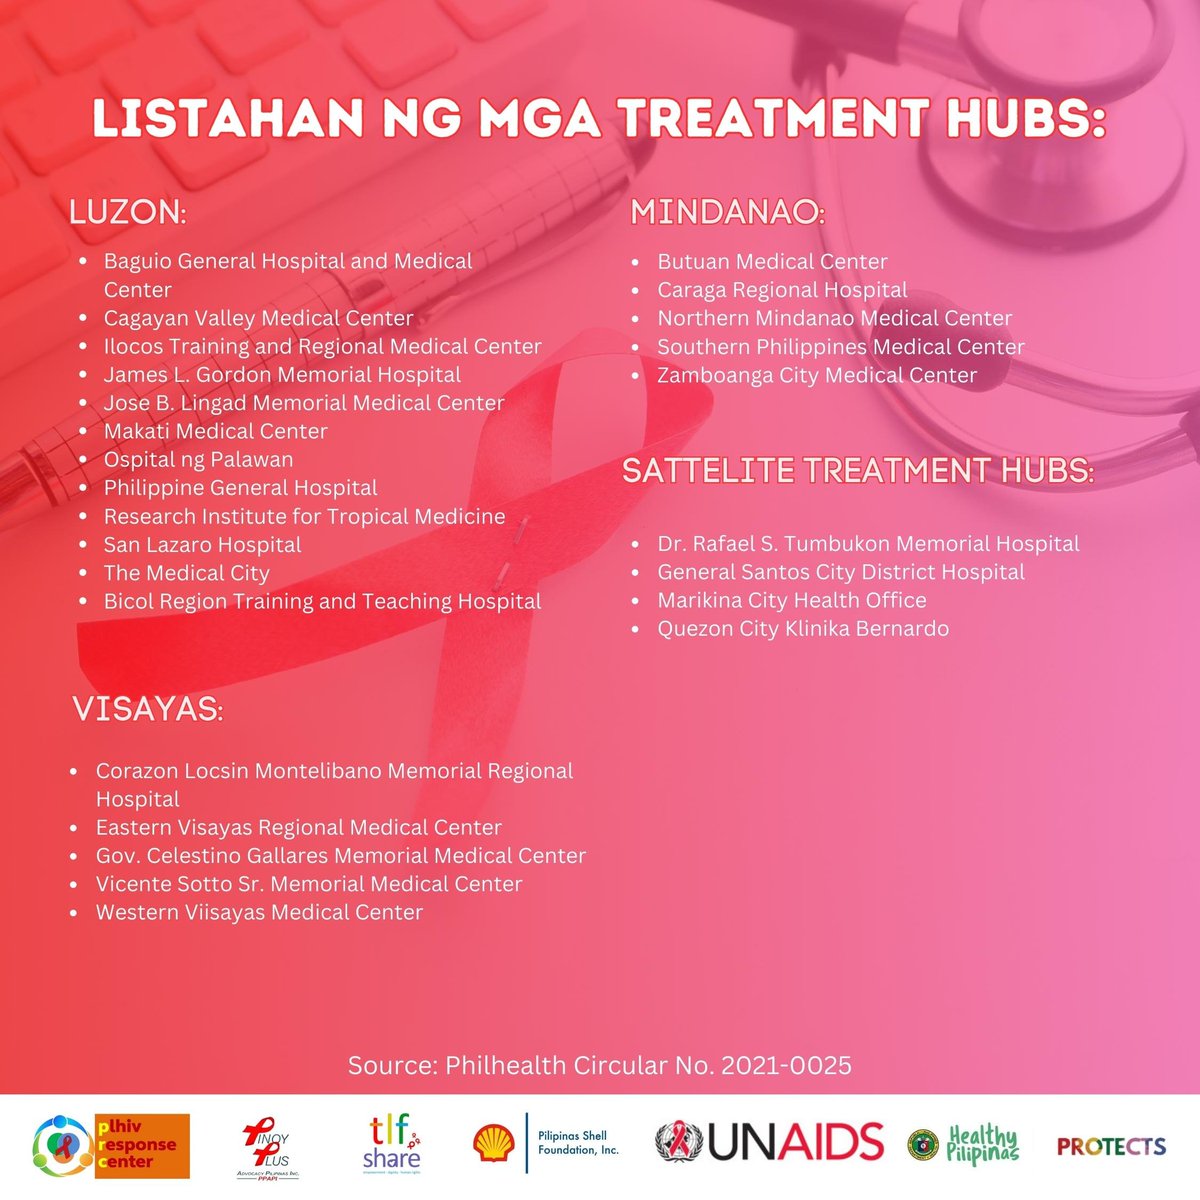 Bilang isang PLHIV dapat knows mo ang iyong right for your health. Naririto ang mga dapat malaman tungkol sa OHAT Package.

I-share ang information na ito para mas marami pa ang makaalam.

#WeArePRC #PinoyPlusInAction #RelevantStories #HealthyPilipinas #PLHIVDiaries